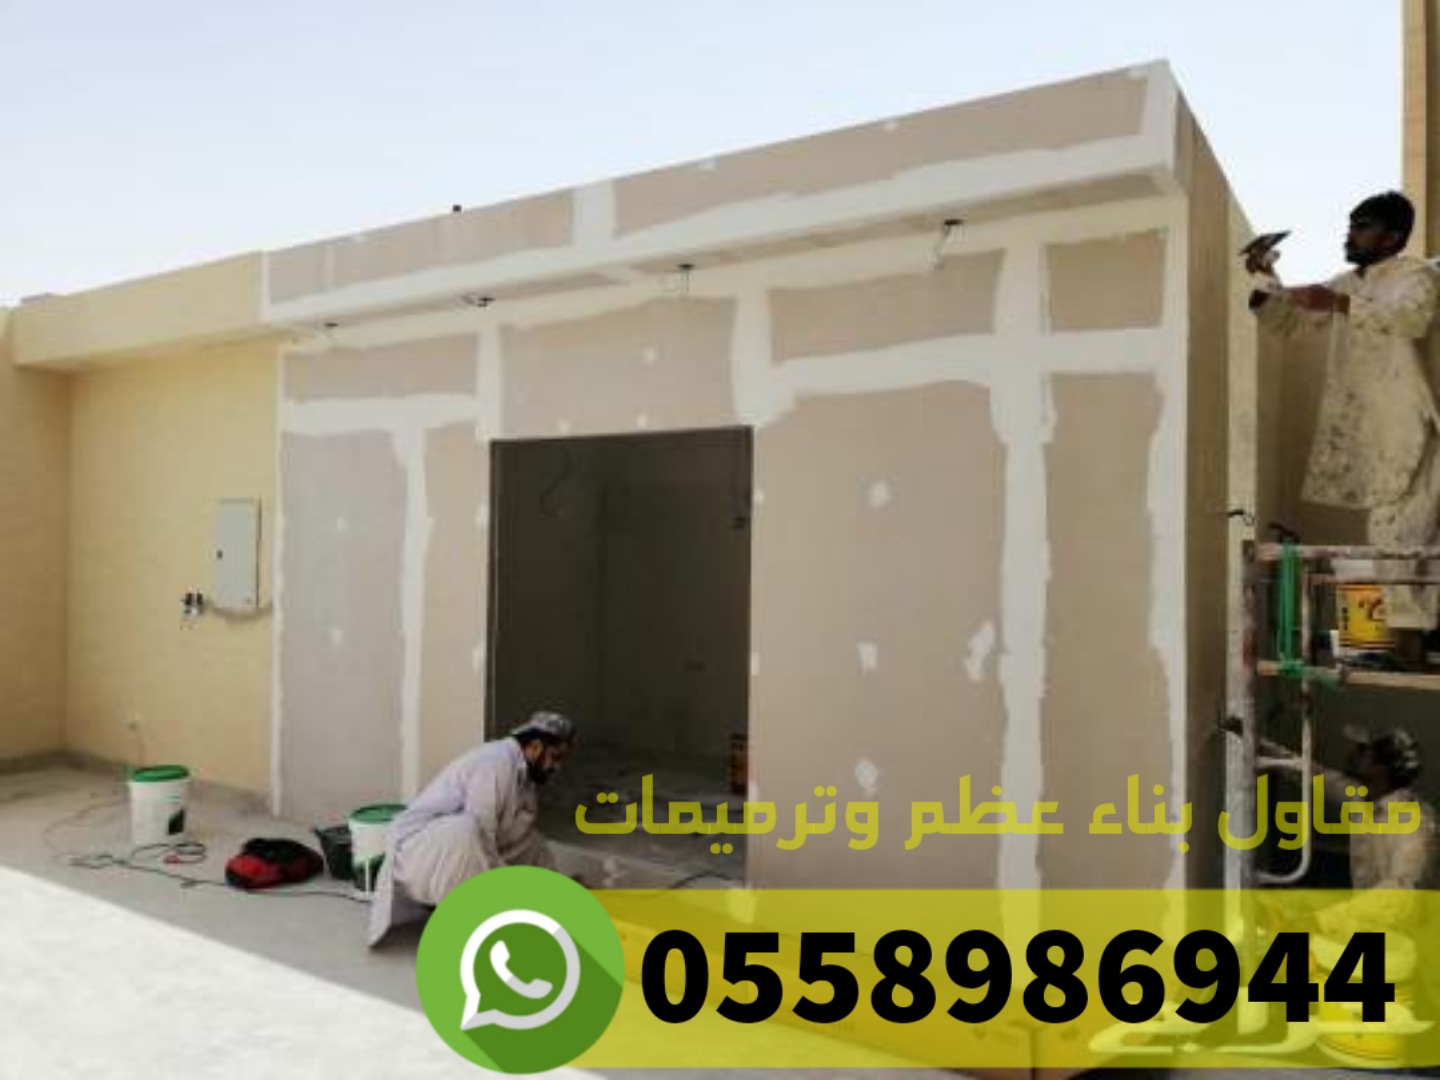 مقاول بناء عظم و ترميم في جدة, 0558986944 P_2486vx6aj4